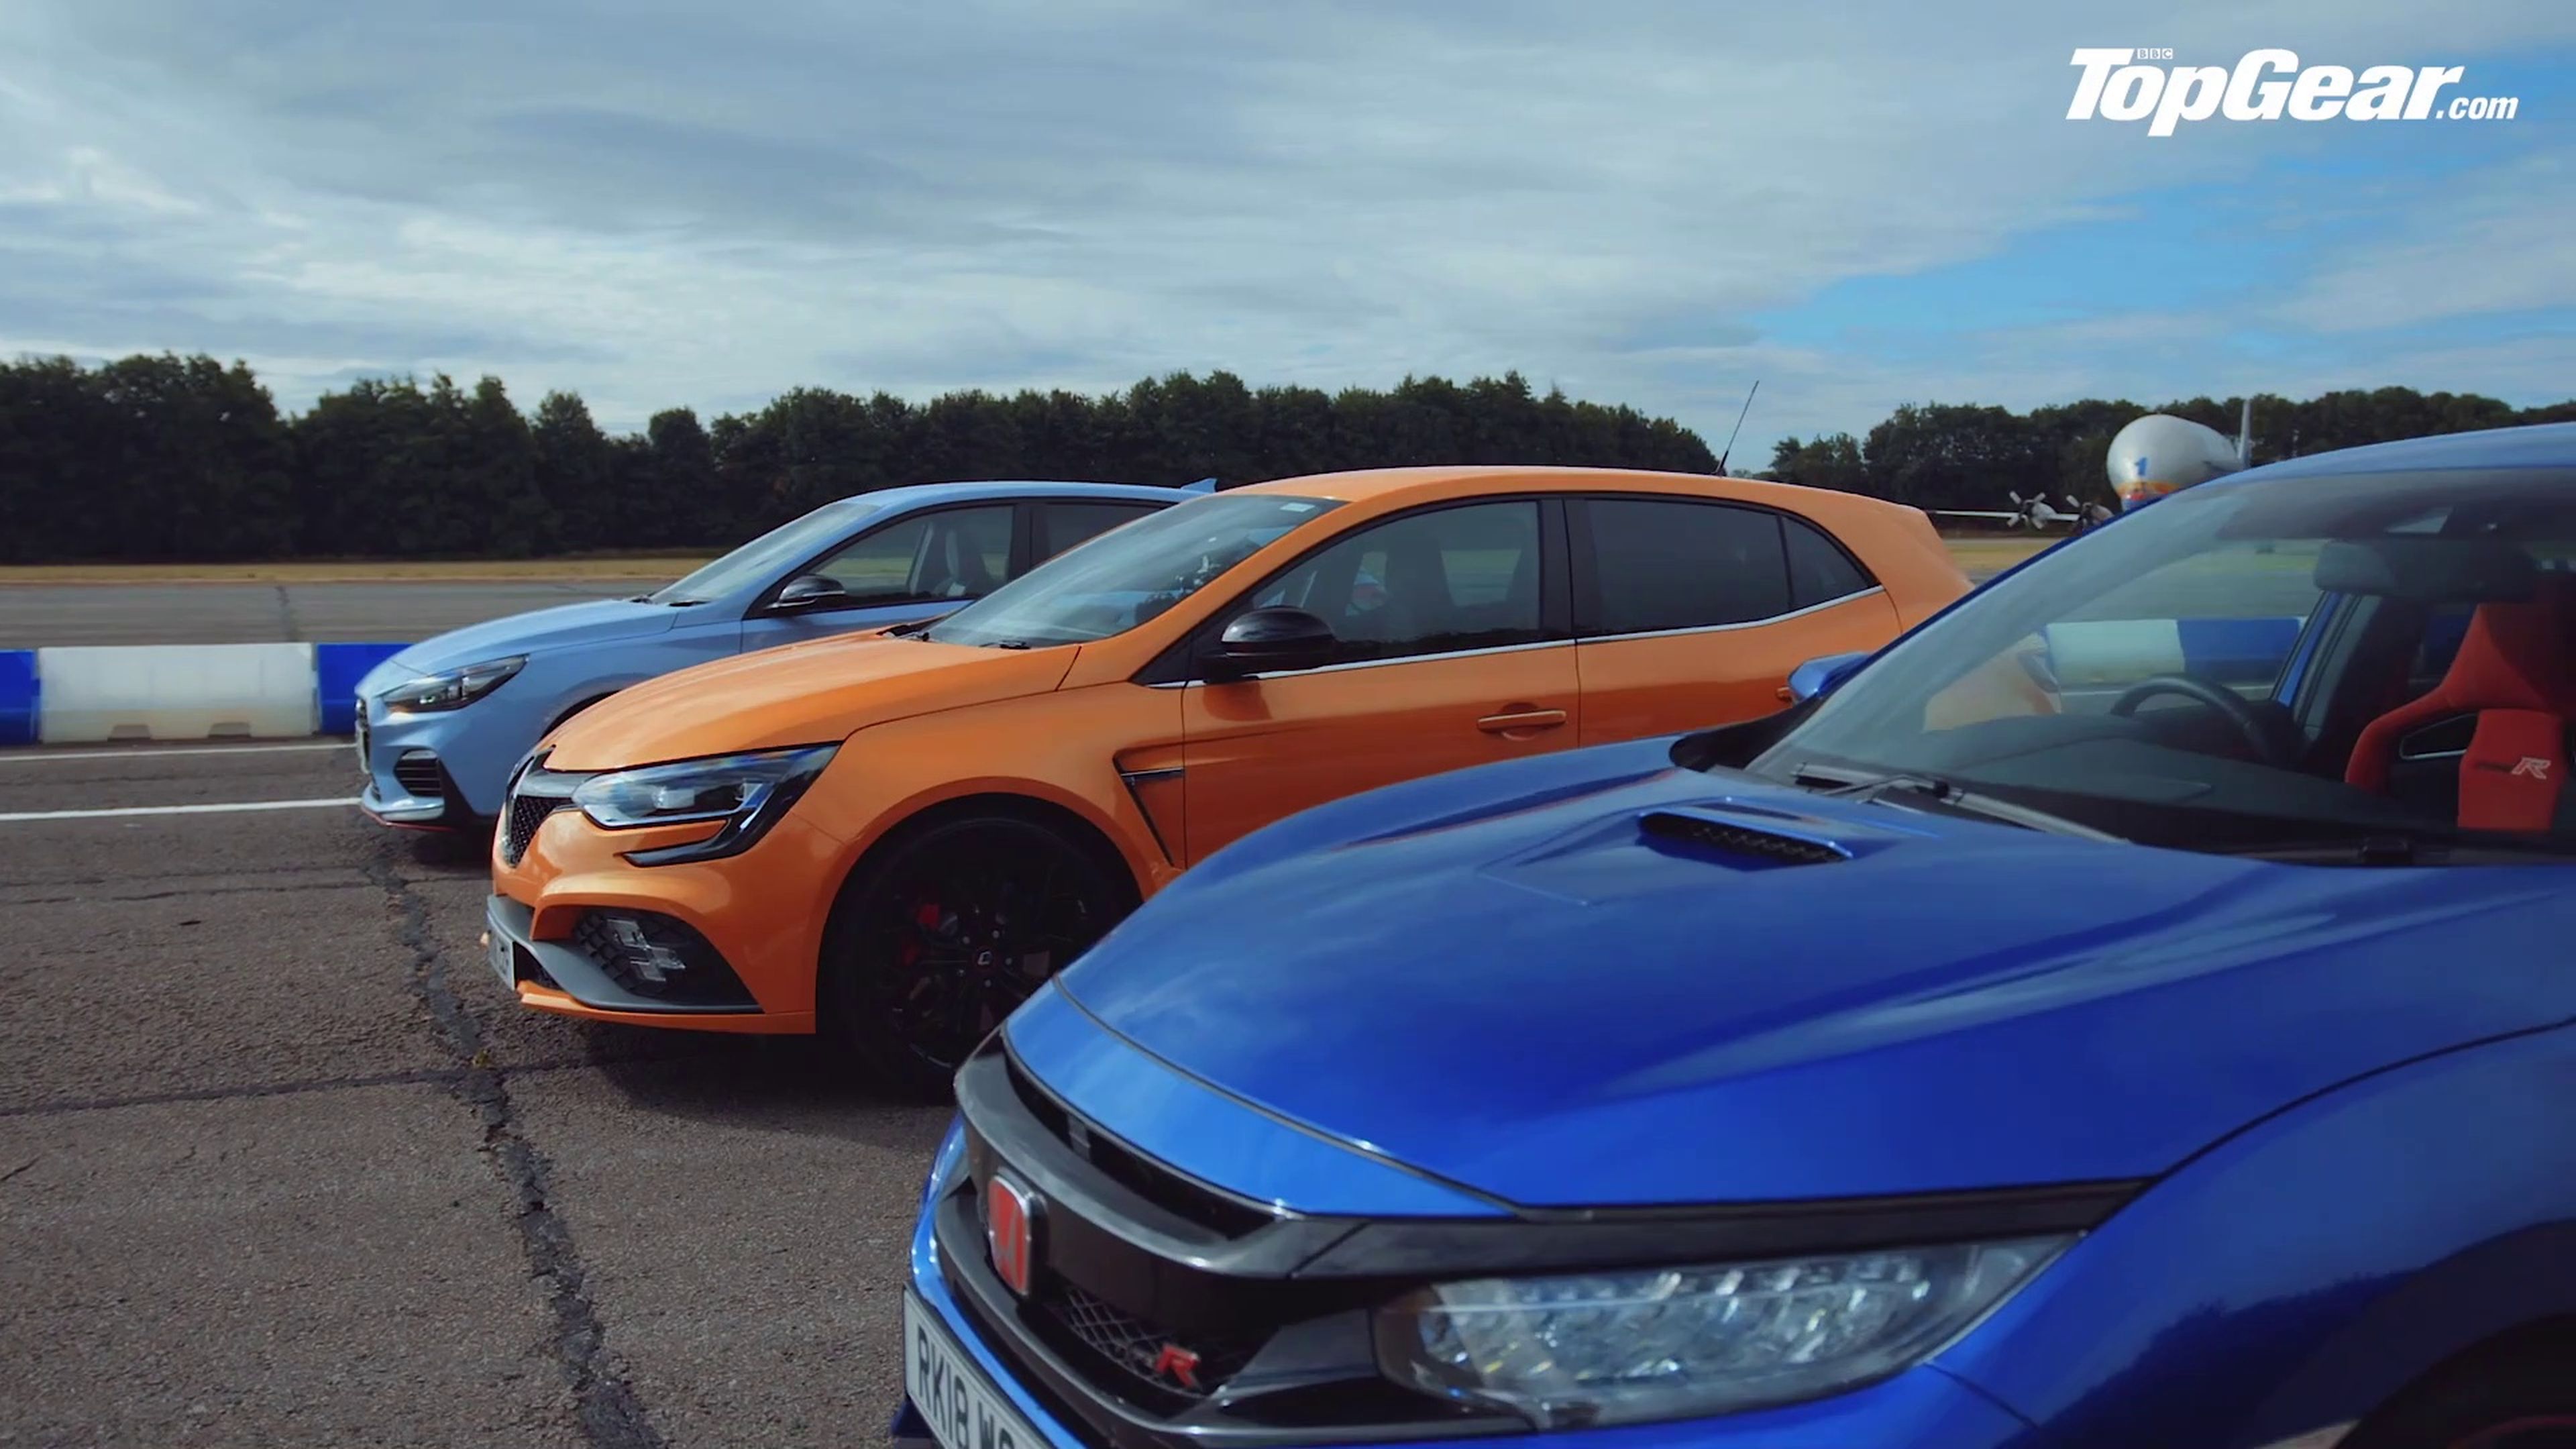 VÍDEO: Honda Civic Type R vs Hyundai i30N vs Renault Mégane RS 280 Cup, ¿cuál acelera más?